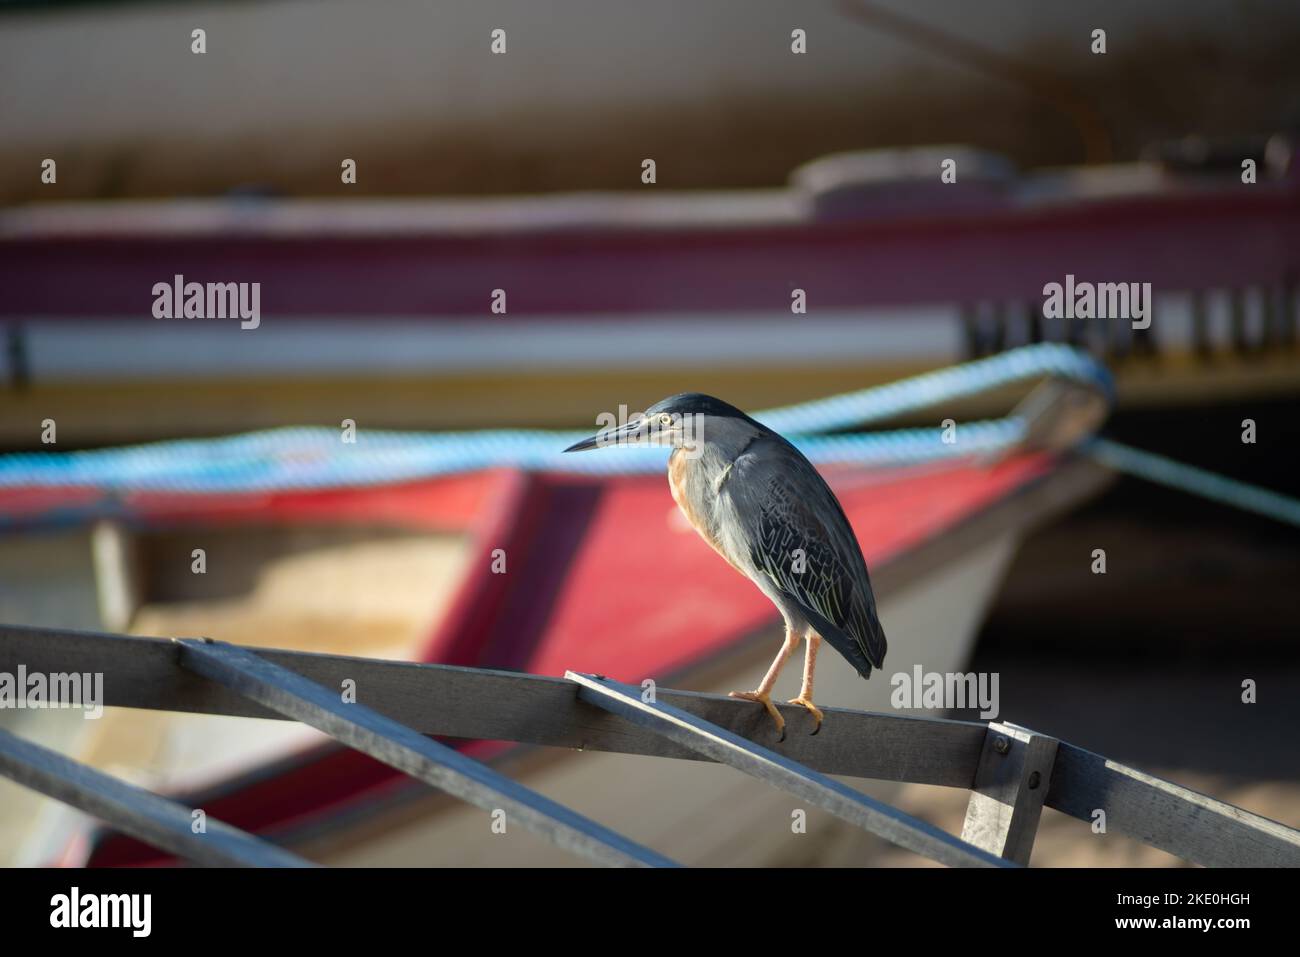 Salvador, Bahia, Brazil - November 01, 2021: SocÃ³ bird standing on the fishing boat waiting for food. Salvador, Bahia, Brazil. Stock Photo